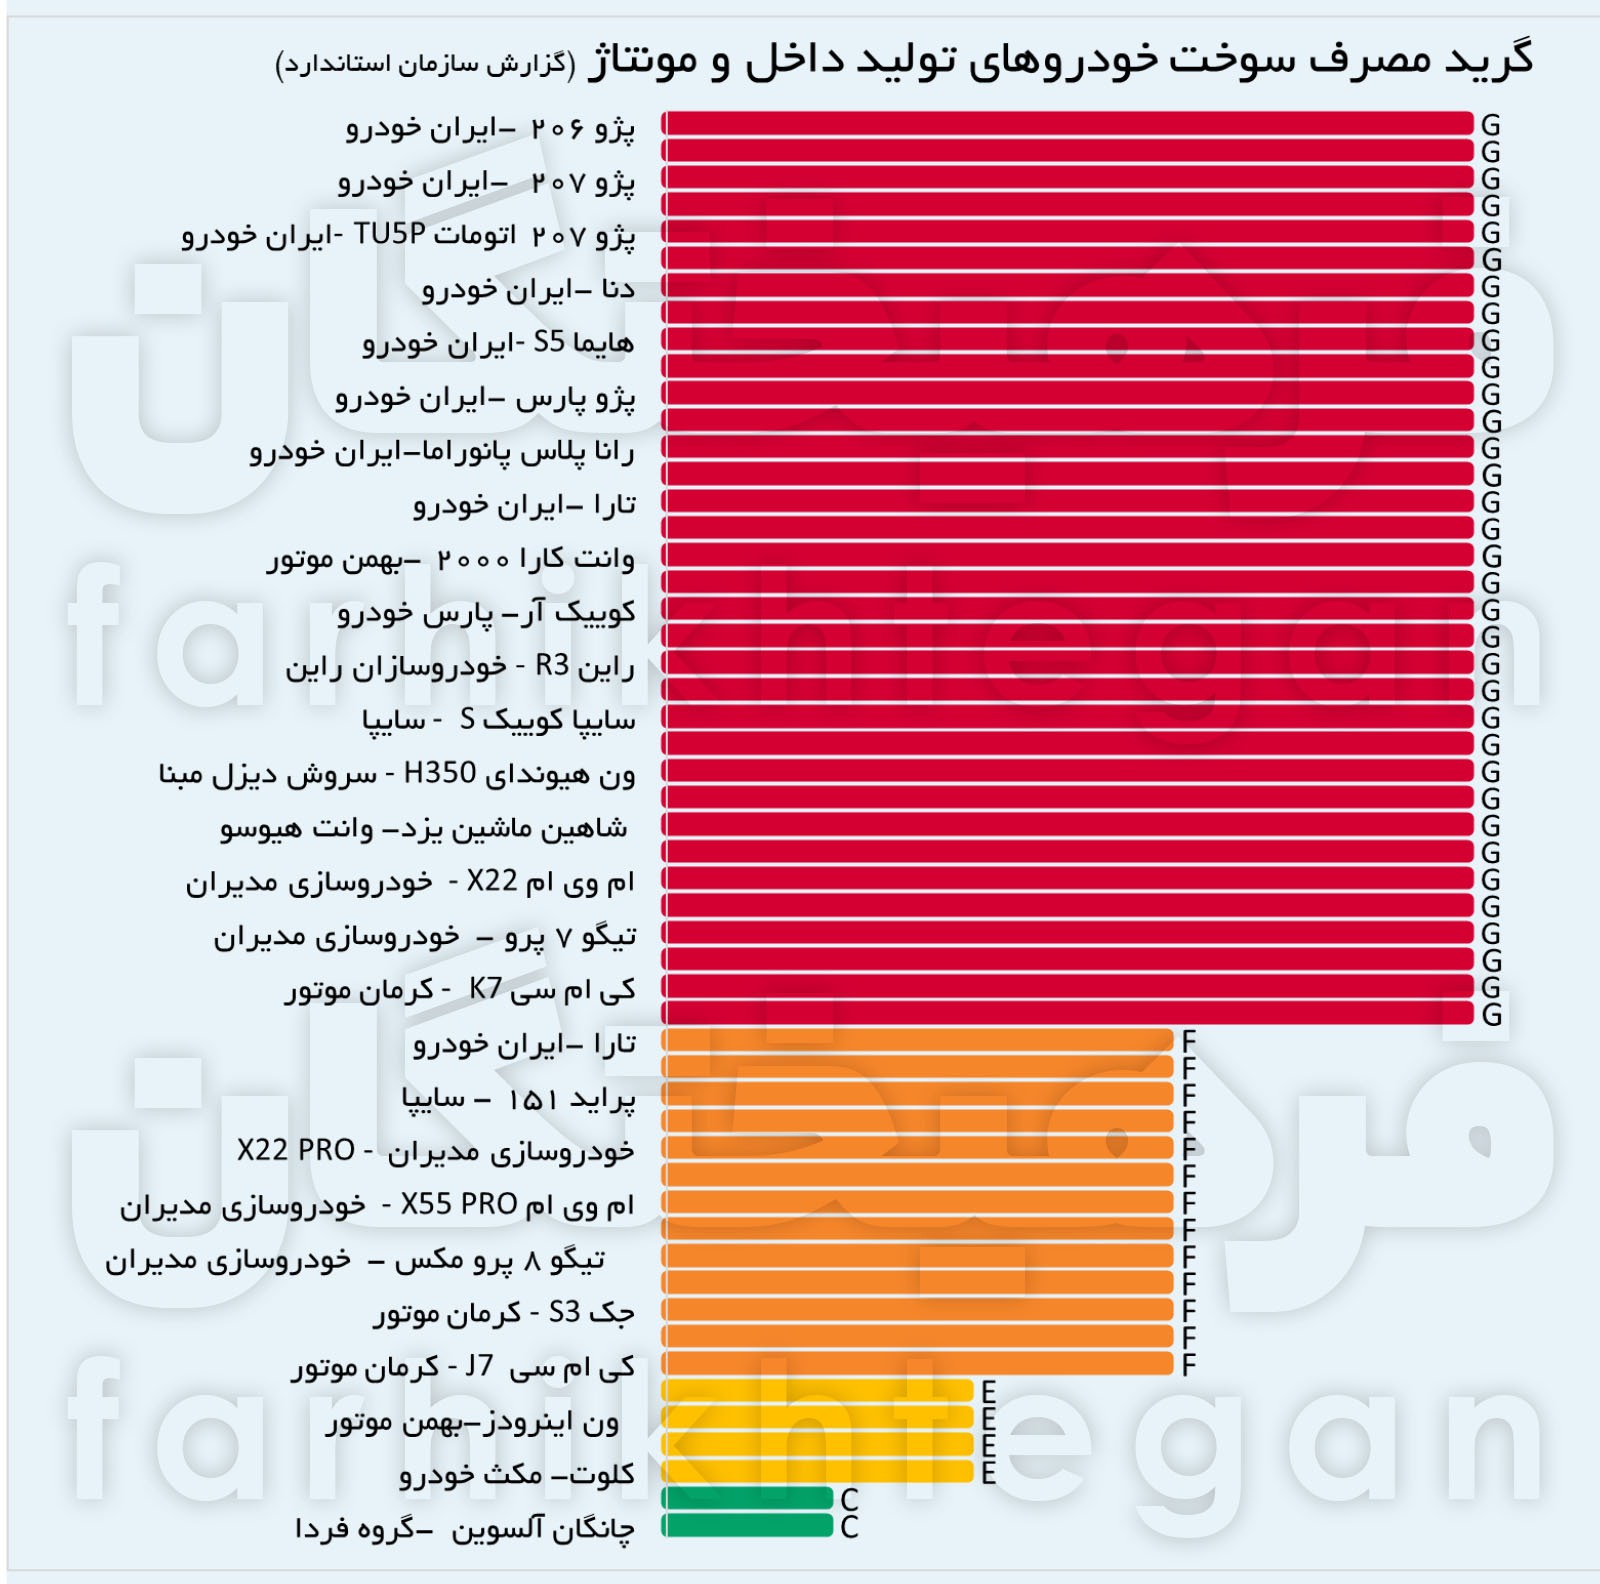 ۶۲ درصد خودروهای ایران پرمصرفند؛ چرا واردات خودروهای باکیفیت ضروری است؟